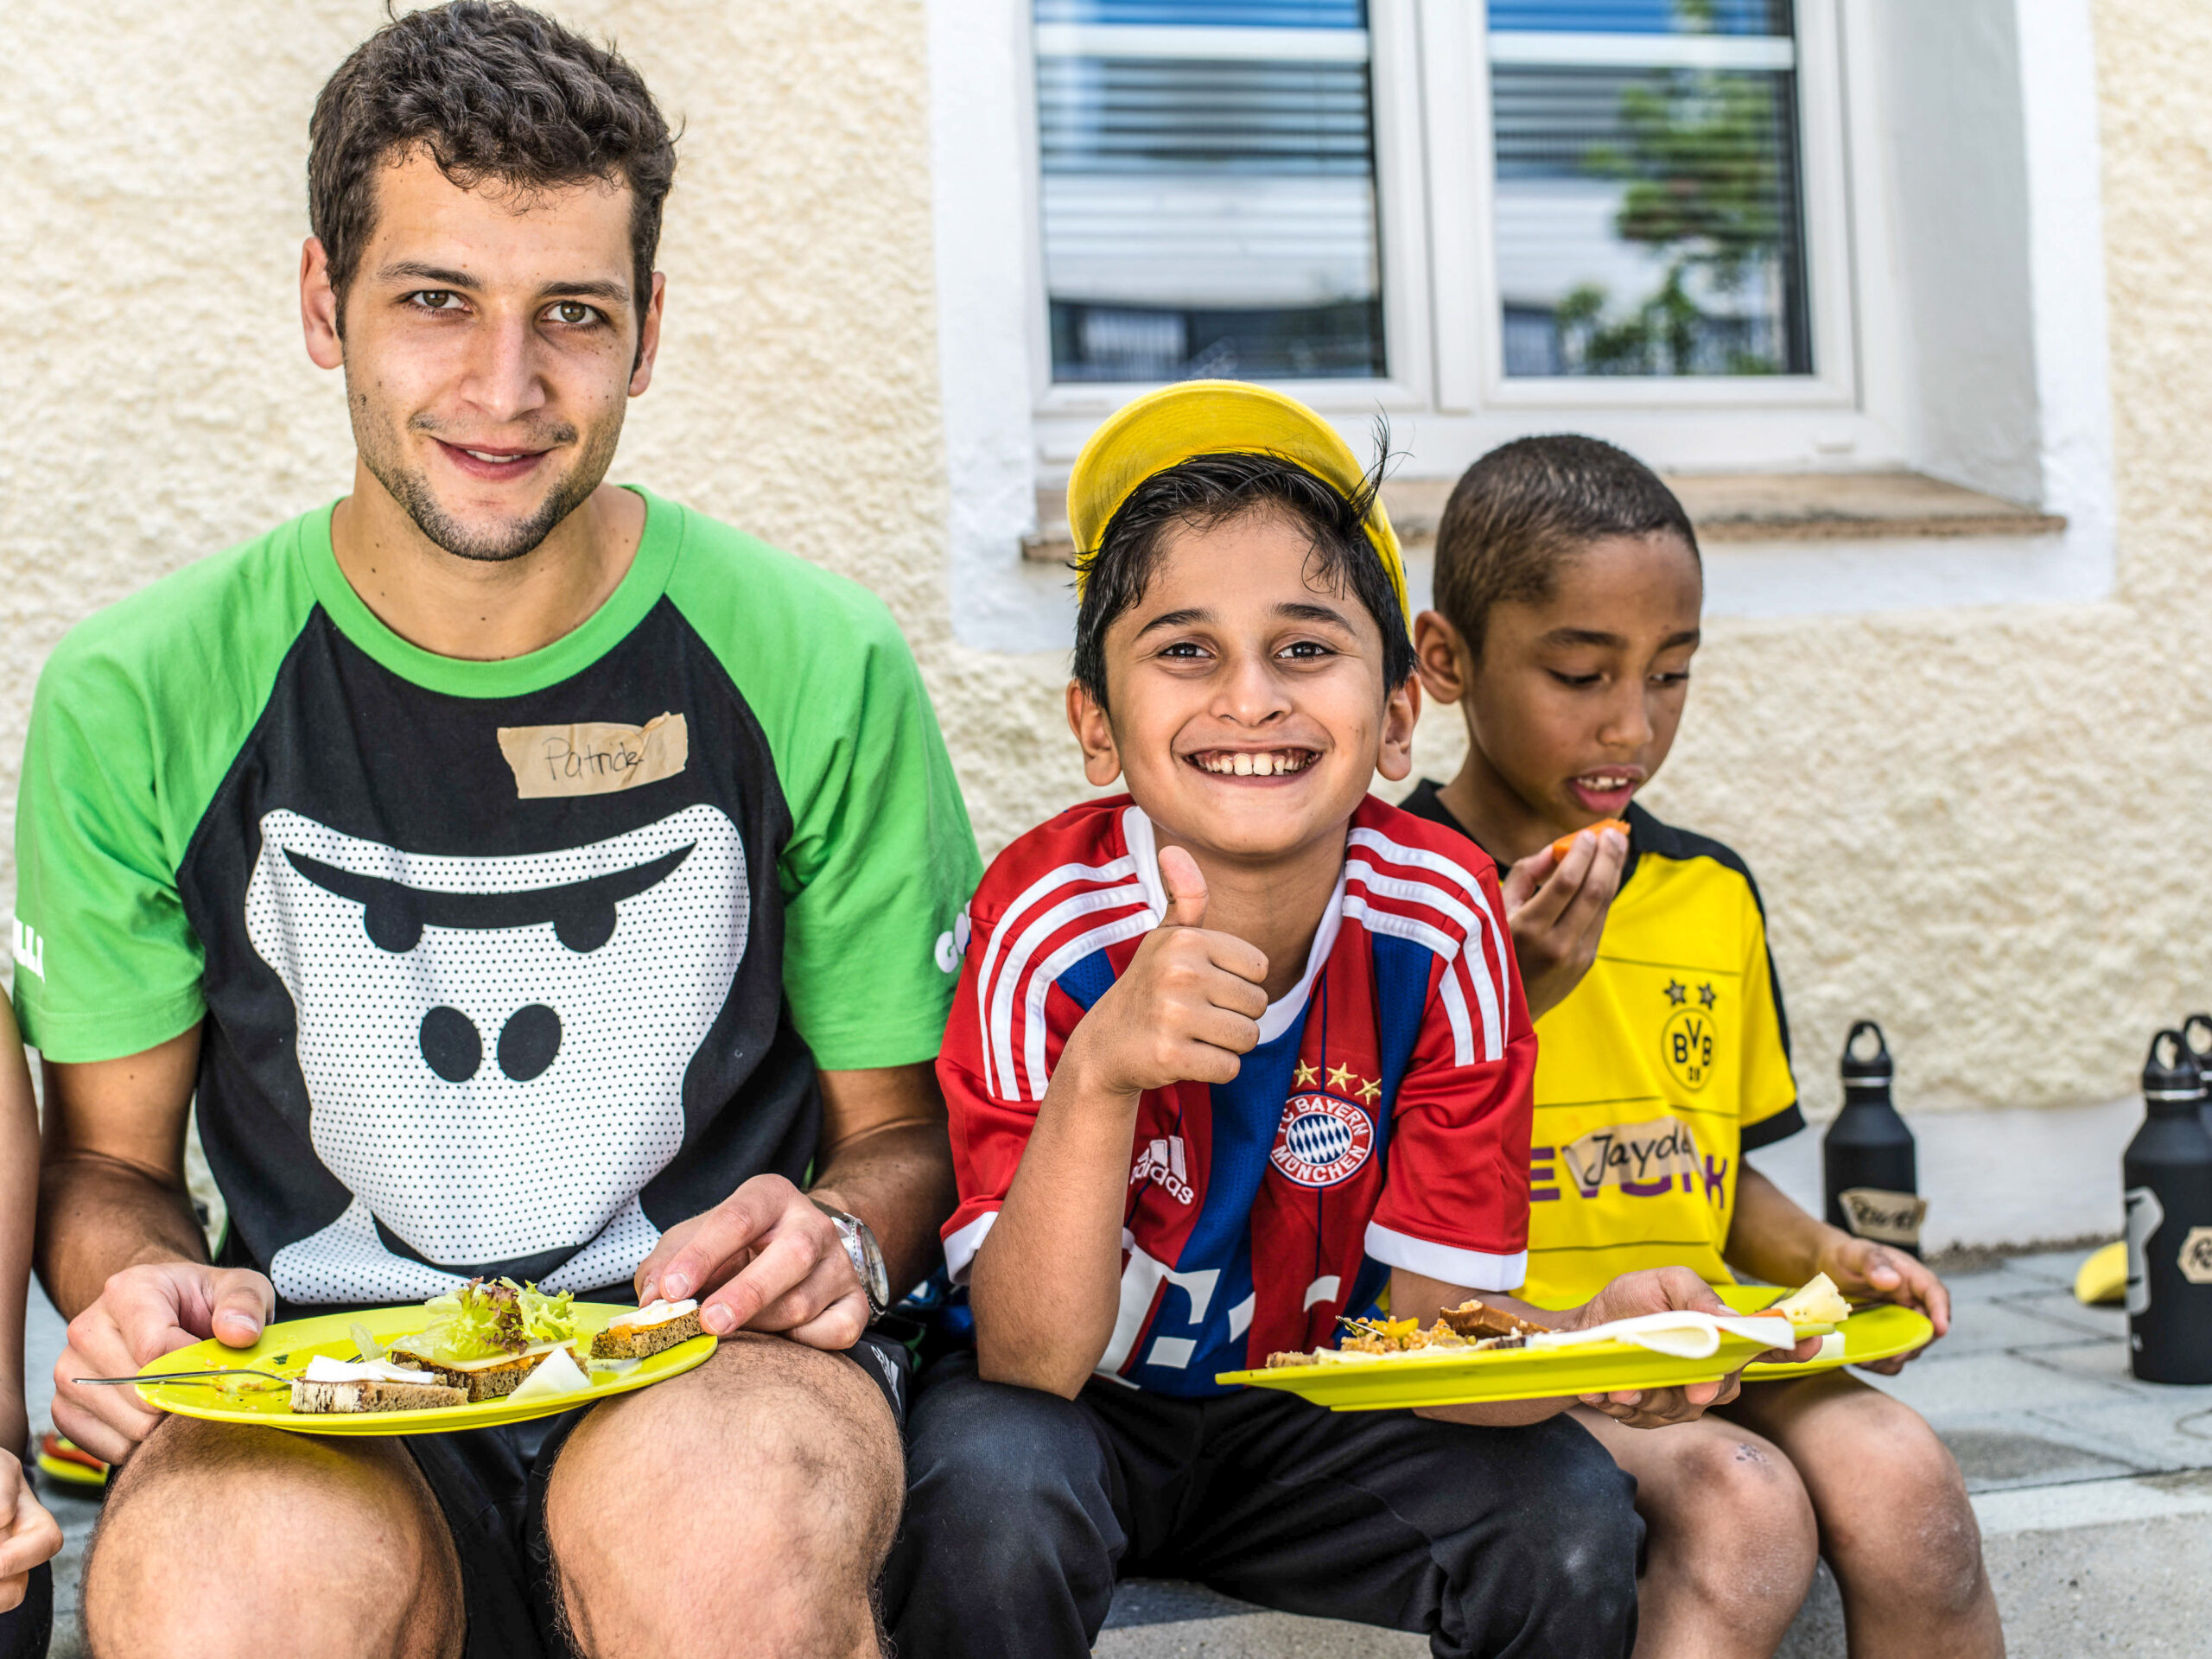 Ein GORILLA Botschafter und ein Kind essen voller Freude ihr Mittagessen im Rahmen eines GORILLA Workshops. Der Junge macht den Daumen hoch als Zeichen seiner Freude.